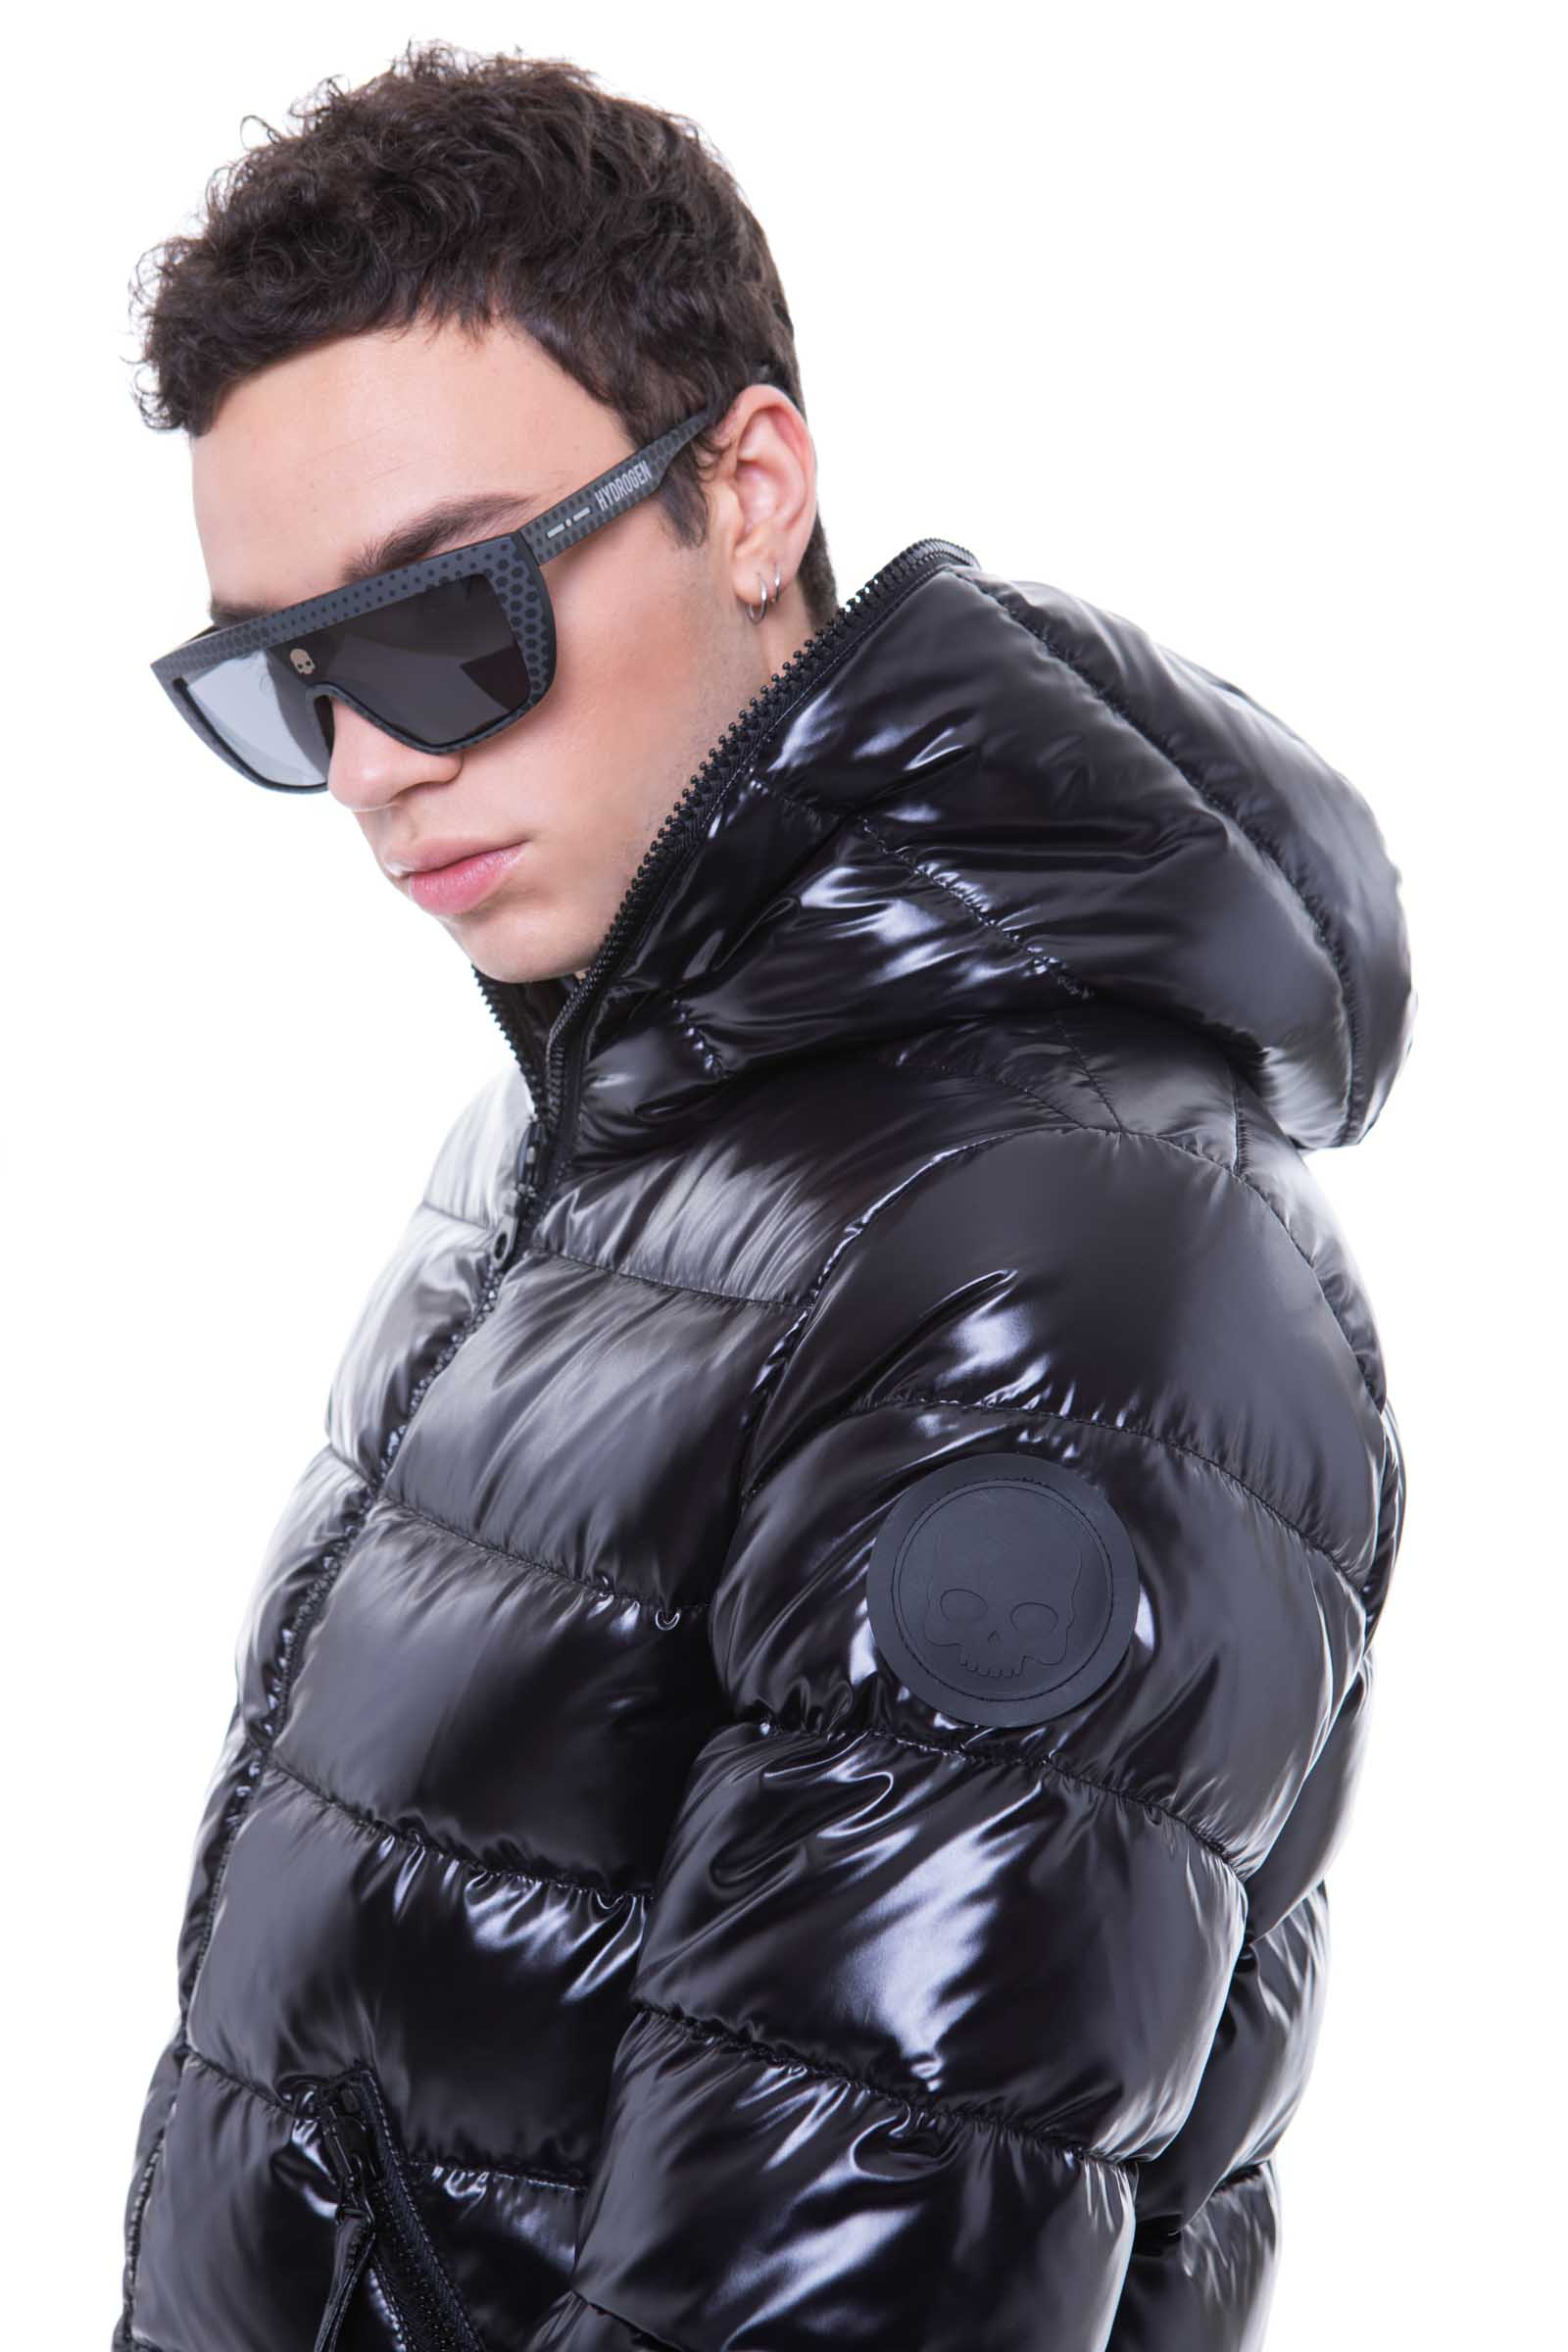 DJ BLACK - Outlet Hydrogen - Luxury Sportwear